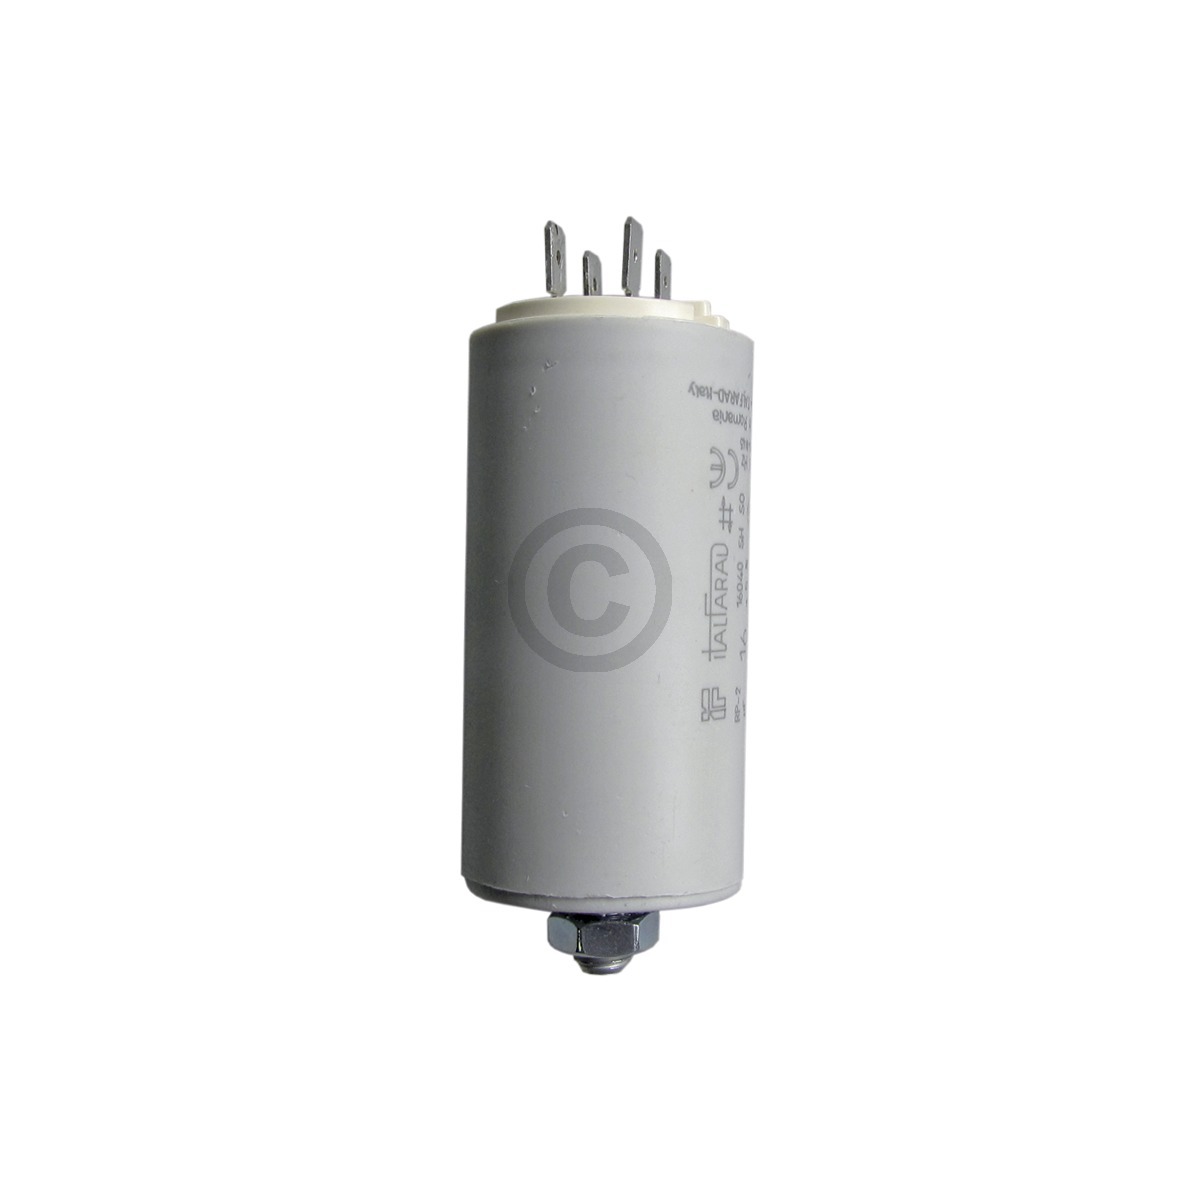 Anlauf Kondensator mit Steckfahnen 15,00 µF 450 V ua für elektrische Hausgeräte 